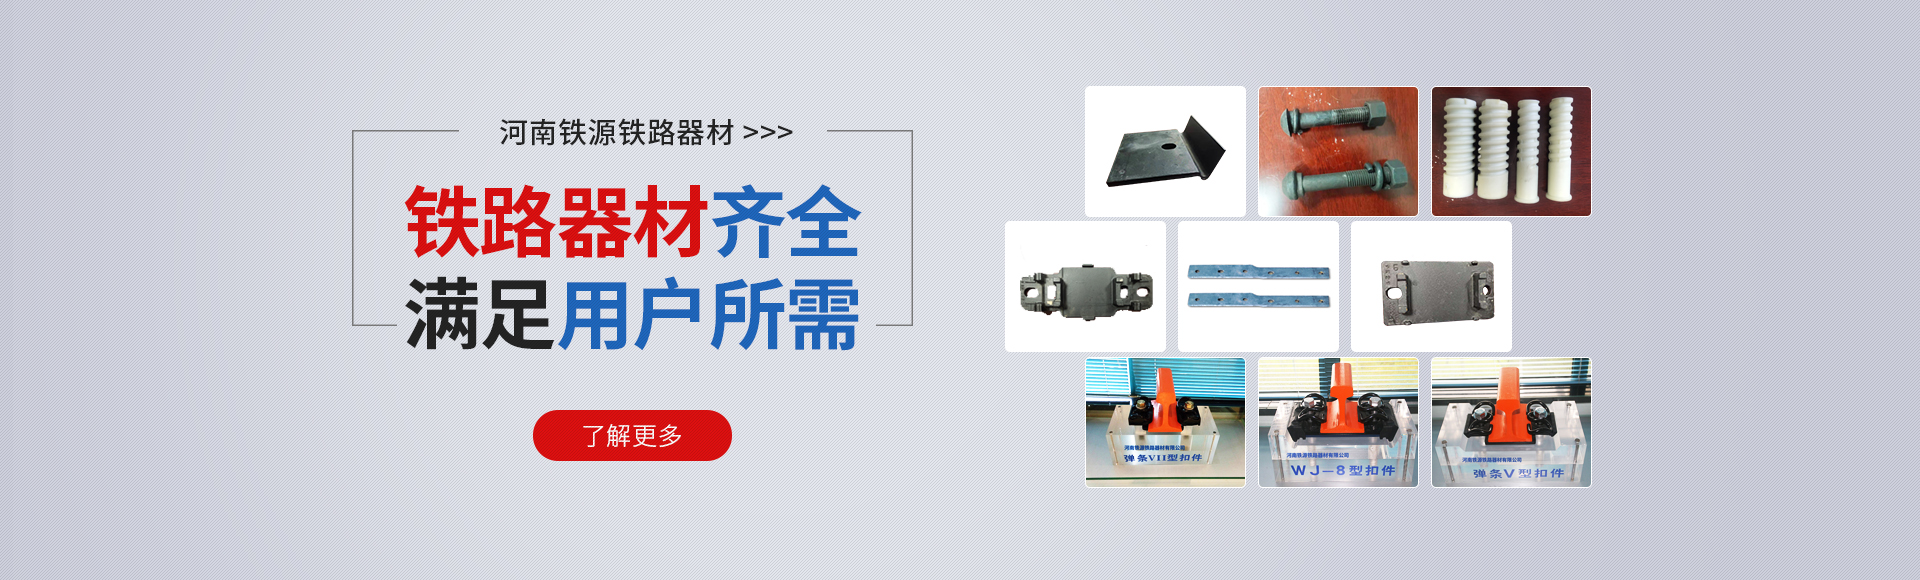 河南AG8九游会中国铁路器材有限公司